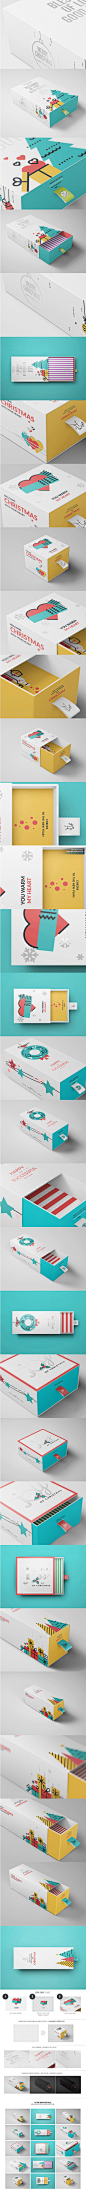 盒形纸盒包装效果图展示场景素材PSD智能贴图模板VI品牌产品提案